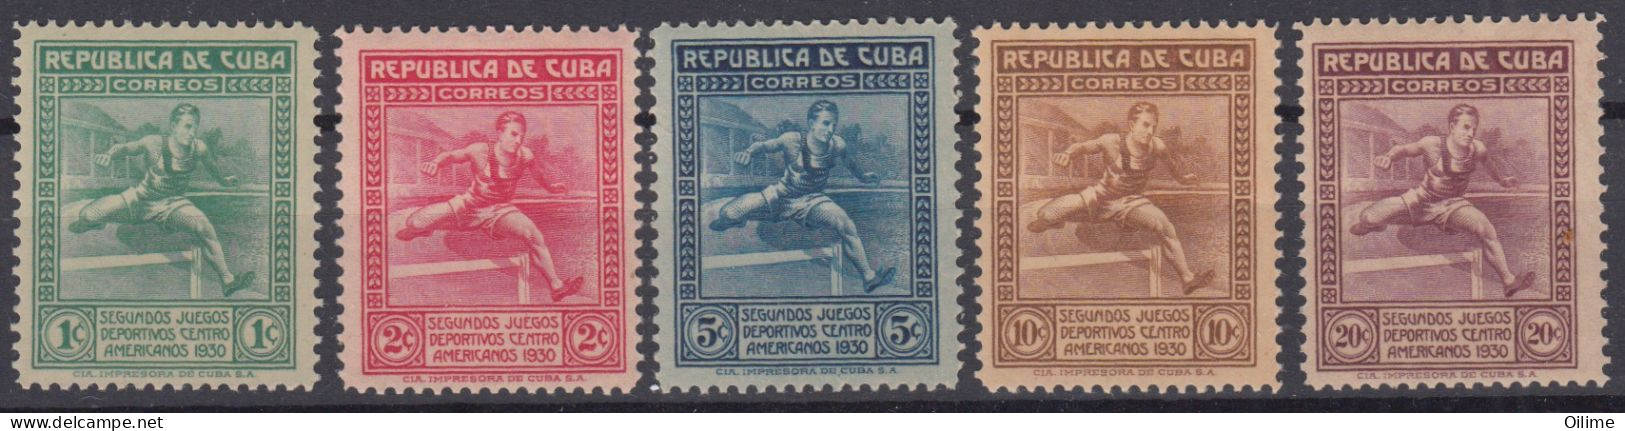 CUBA 1930. II JUEGOS DEPORTIVOS CENTROAMERICANOS. MNH. EDIFIL 239/43 - Nuevos